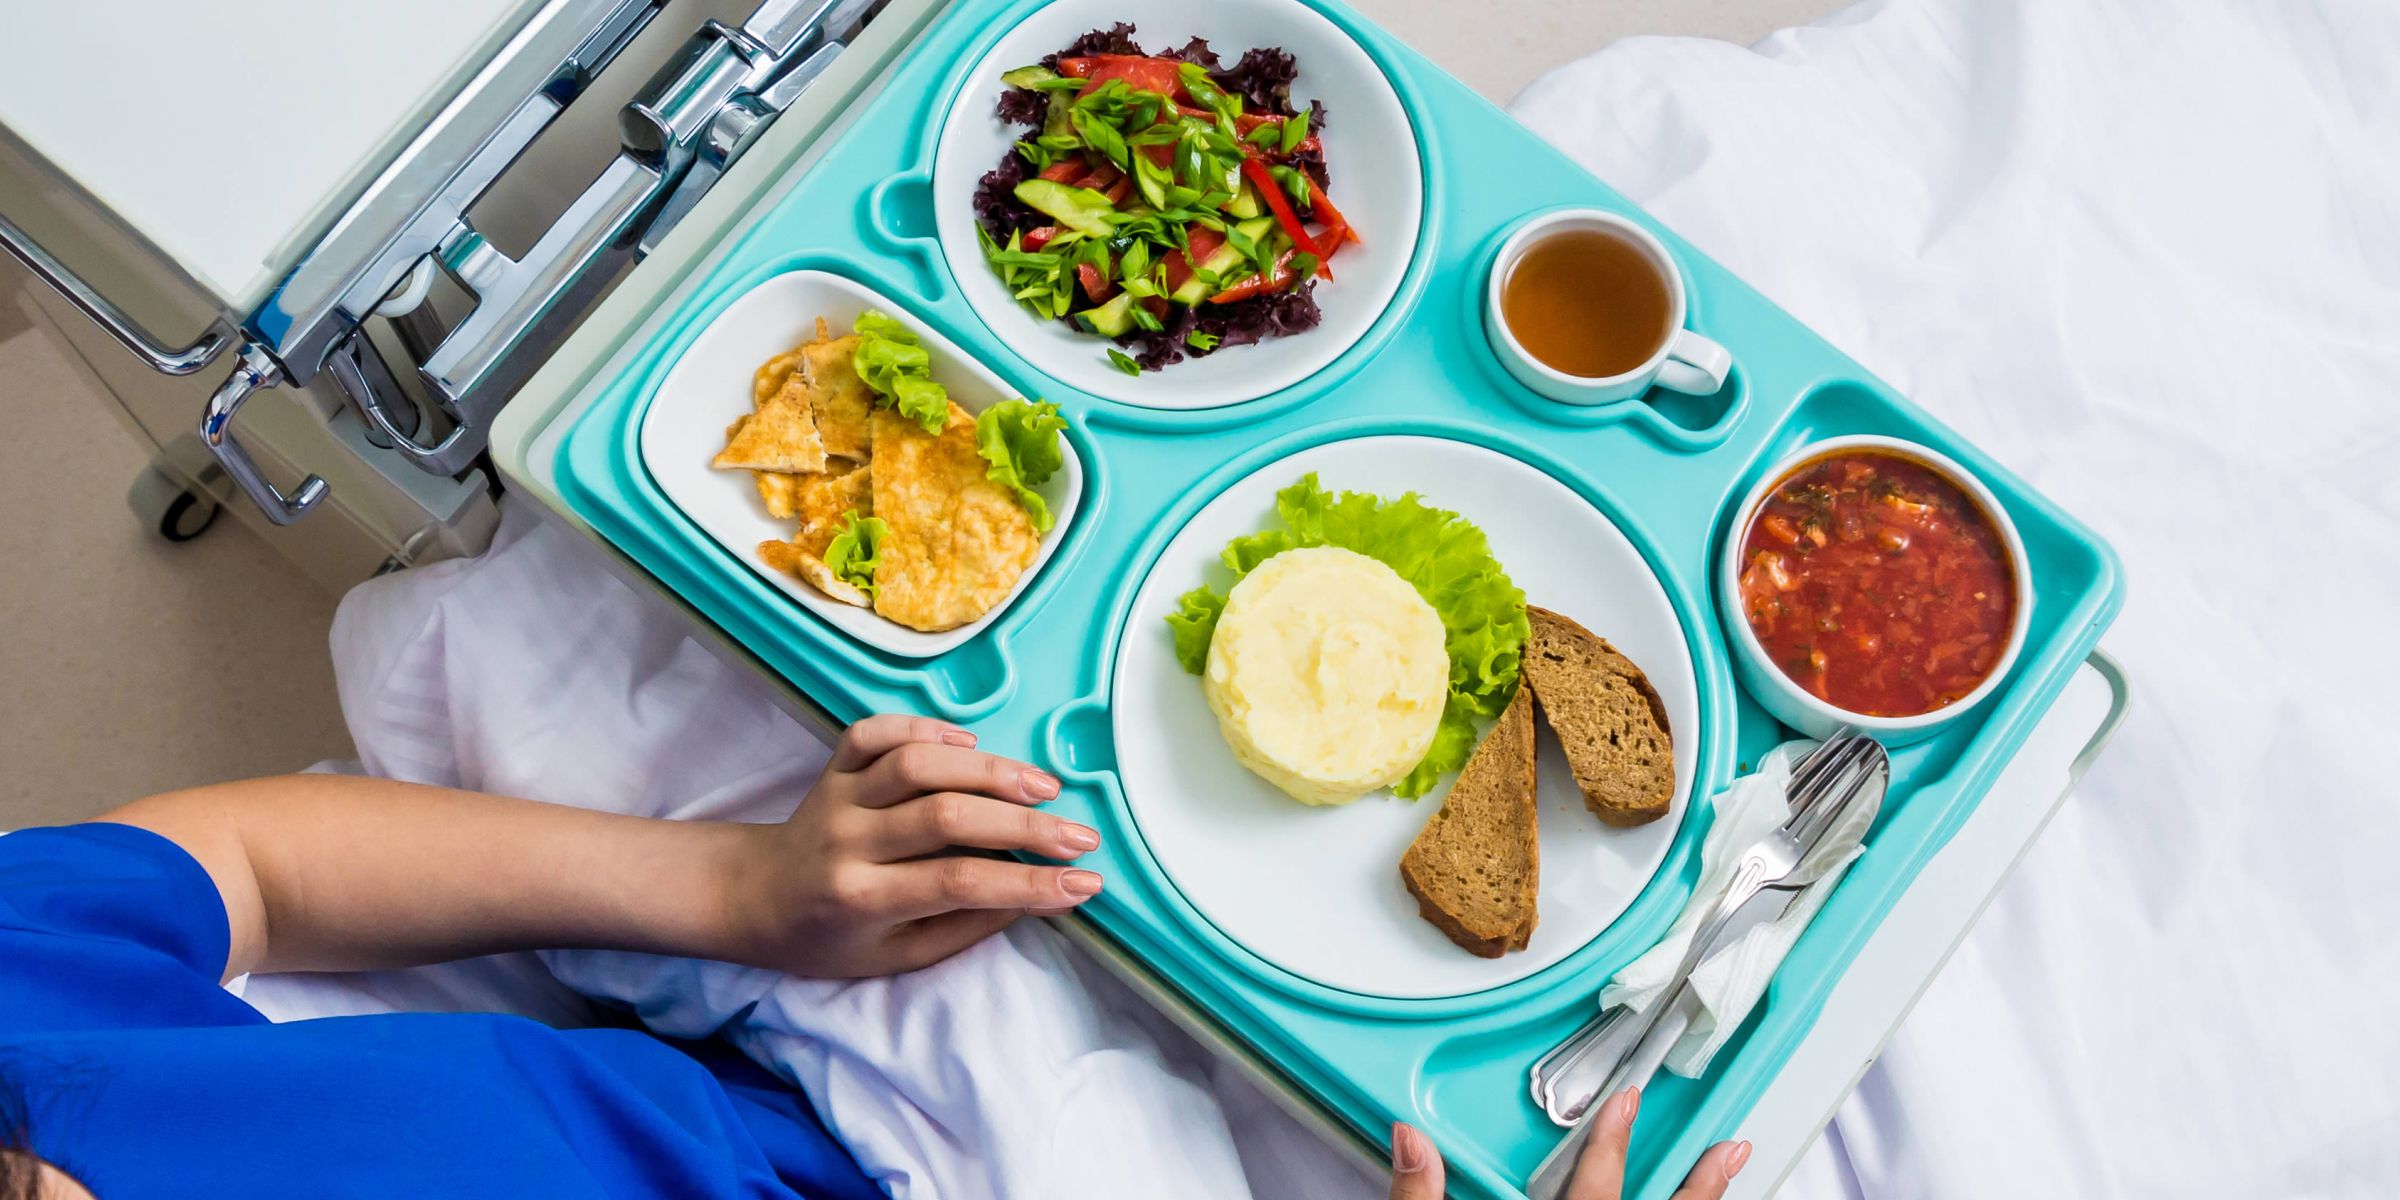 Care Catering/Klinikgastronomie - Guten Appetit und gute Besserung